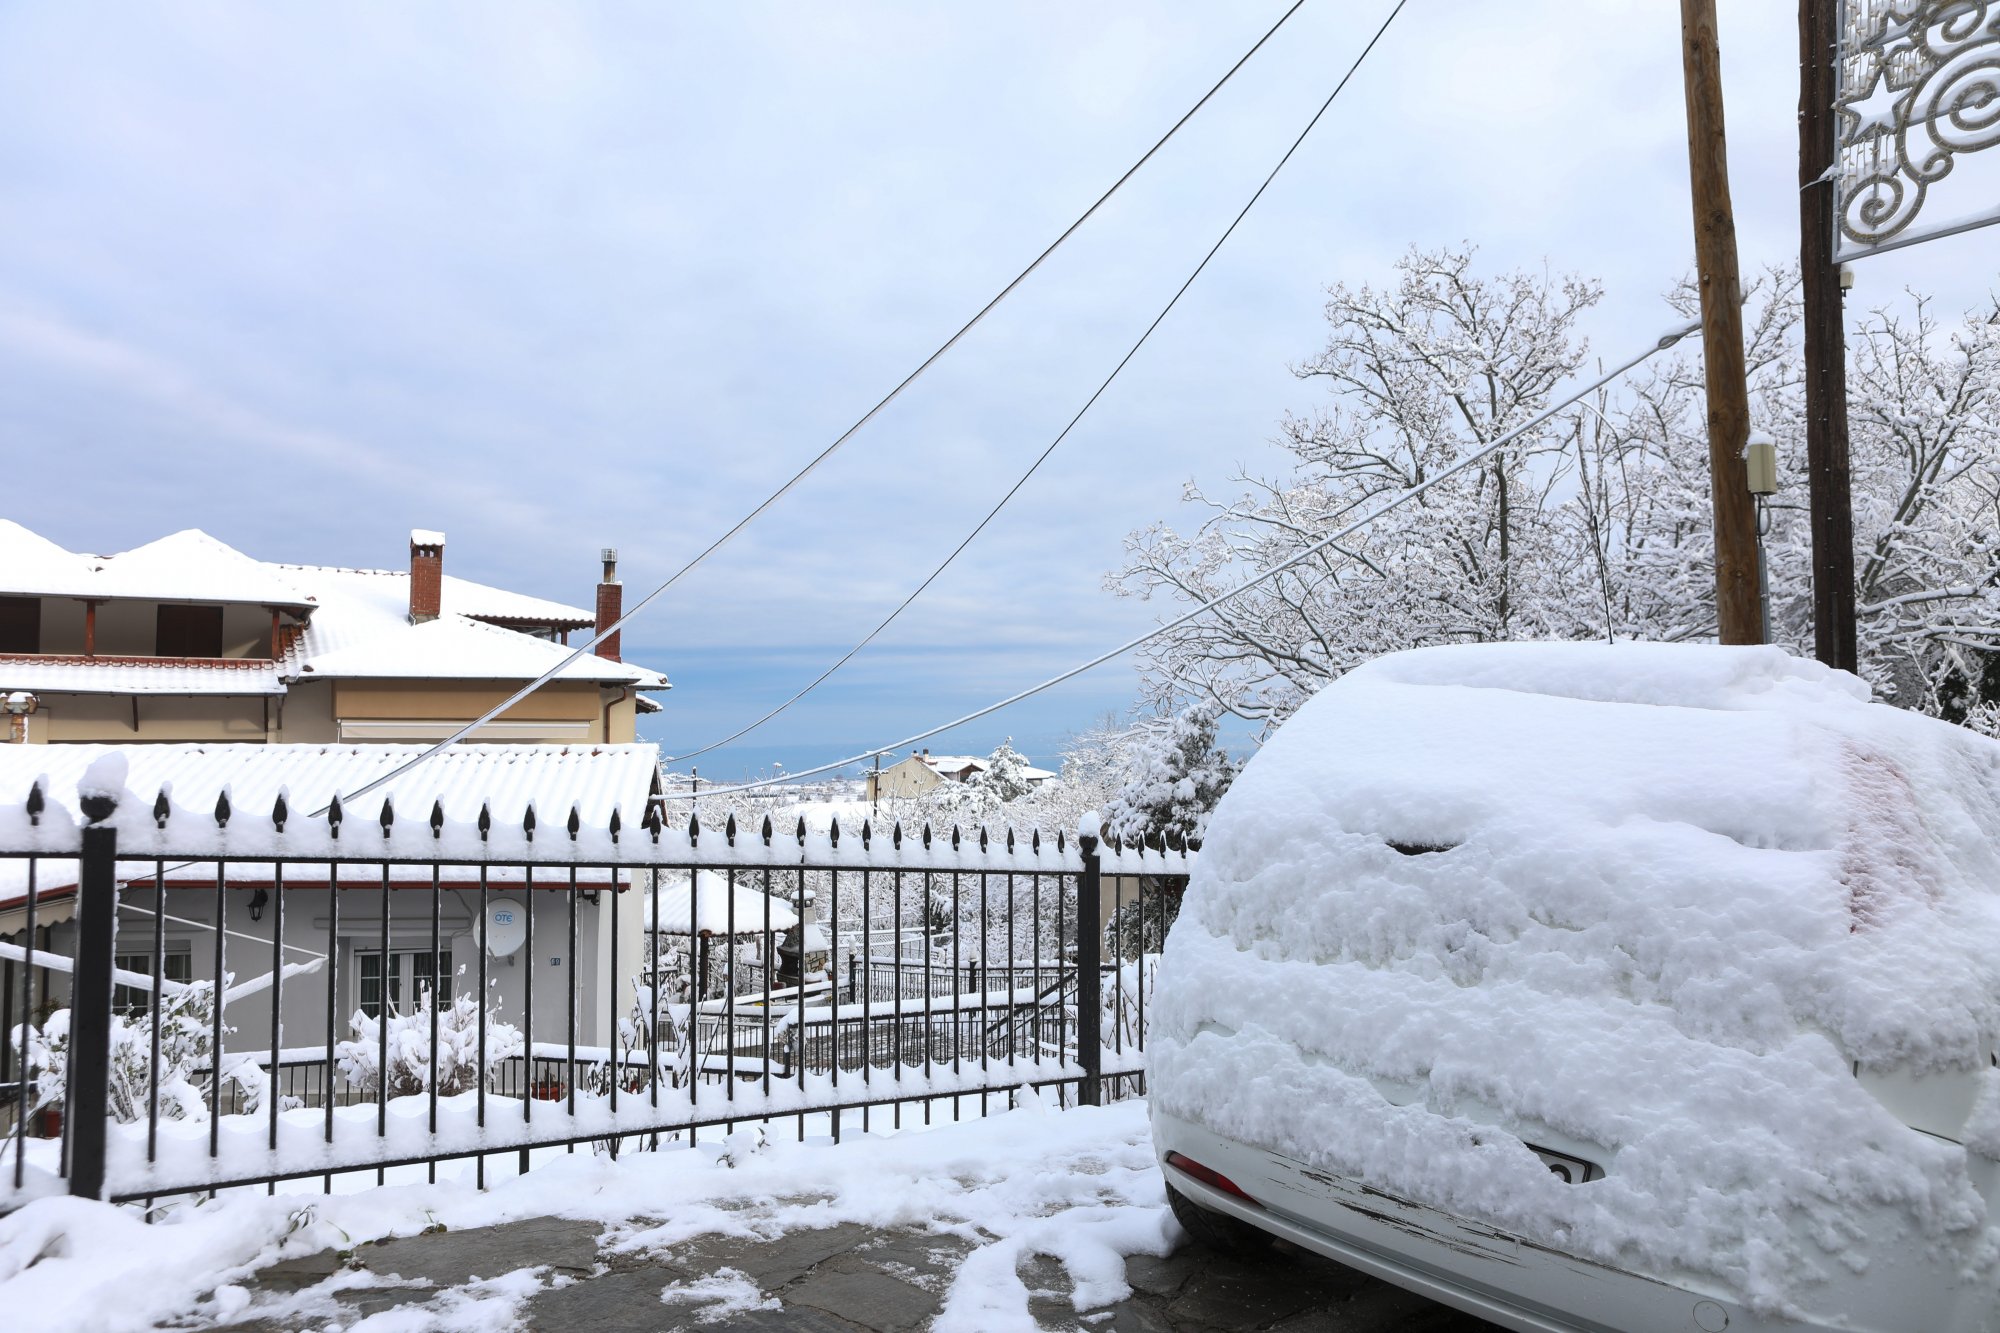 Συναγερμός για τον χιονιά: Κλειστά σχολεία και υποχρεωτικές αντιολισθητικές αλυσίδες - Όλα τα μέτρα